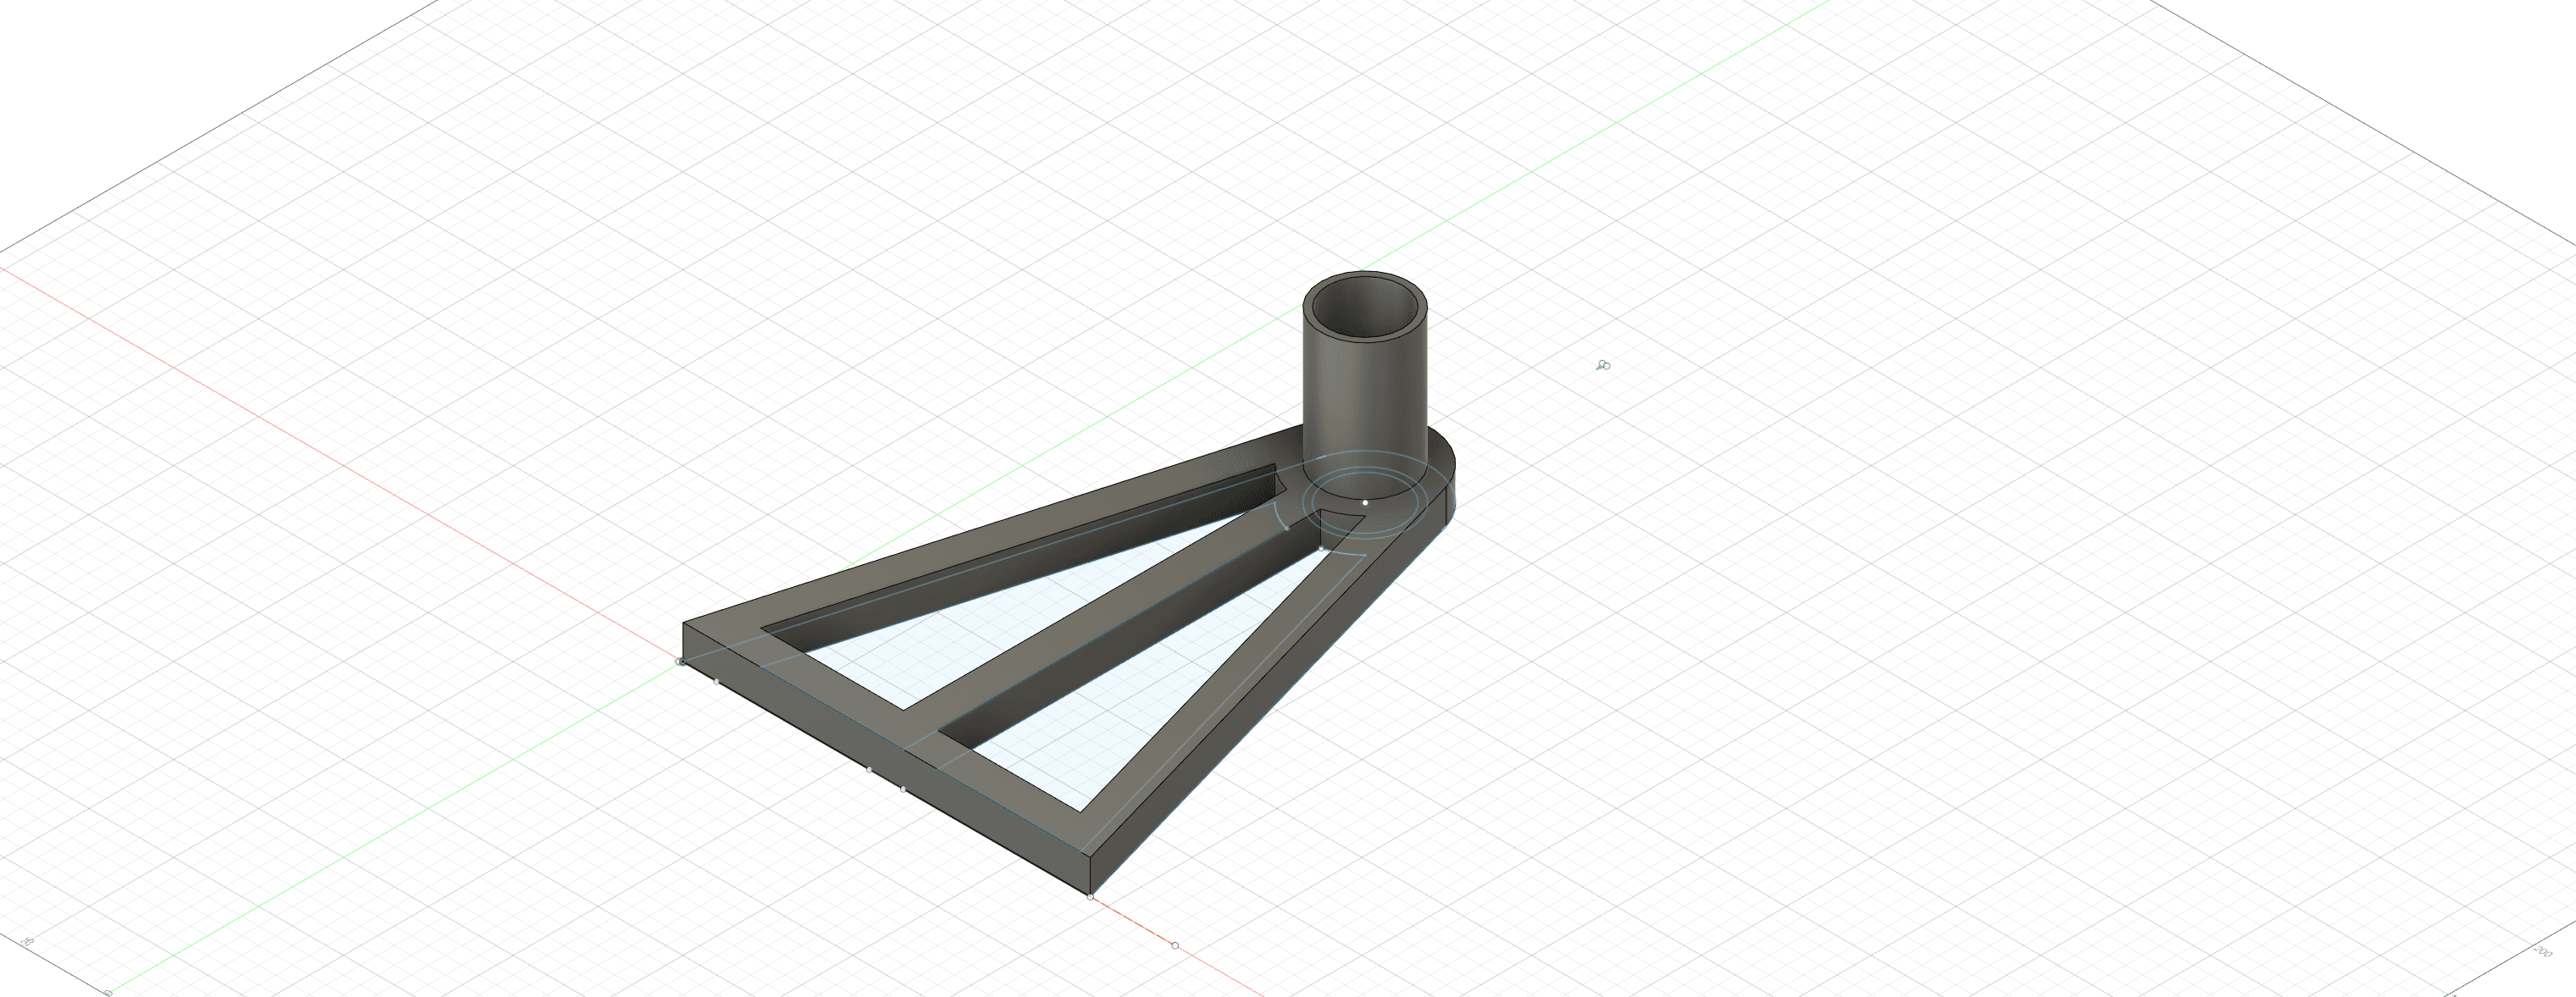 Anycubic Vyper Filament Reel Support v1 3d model